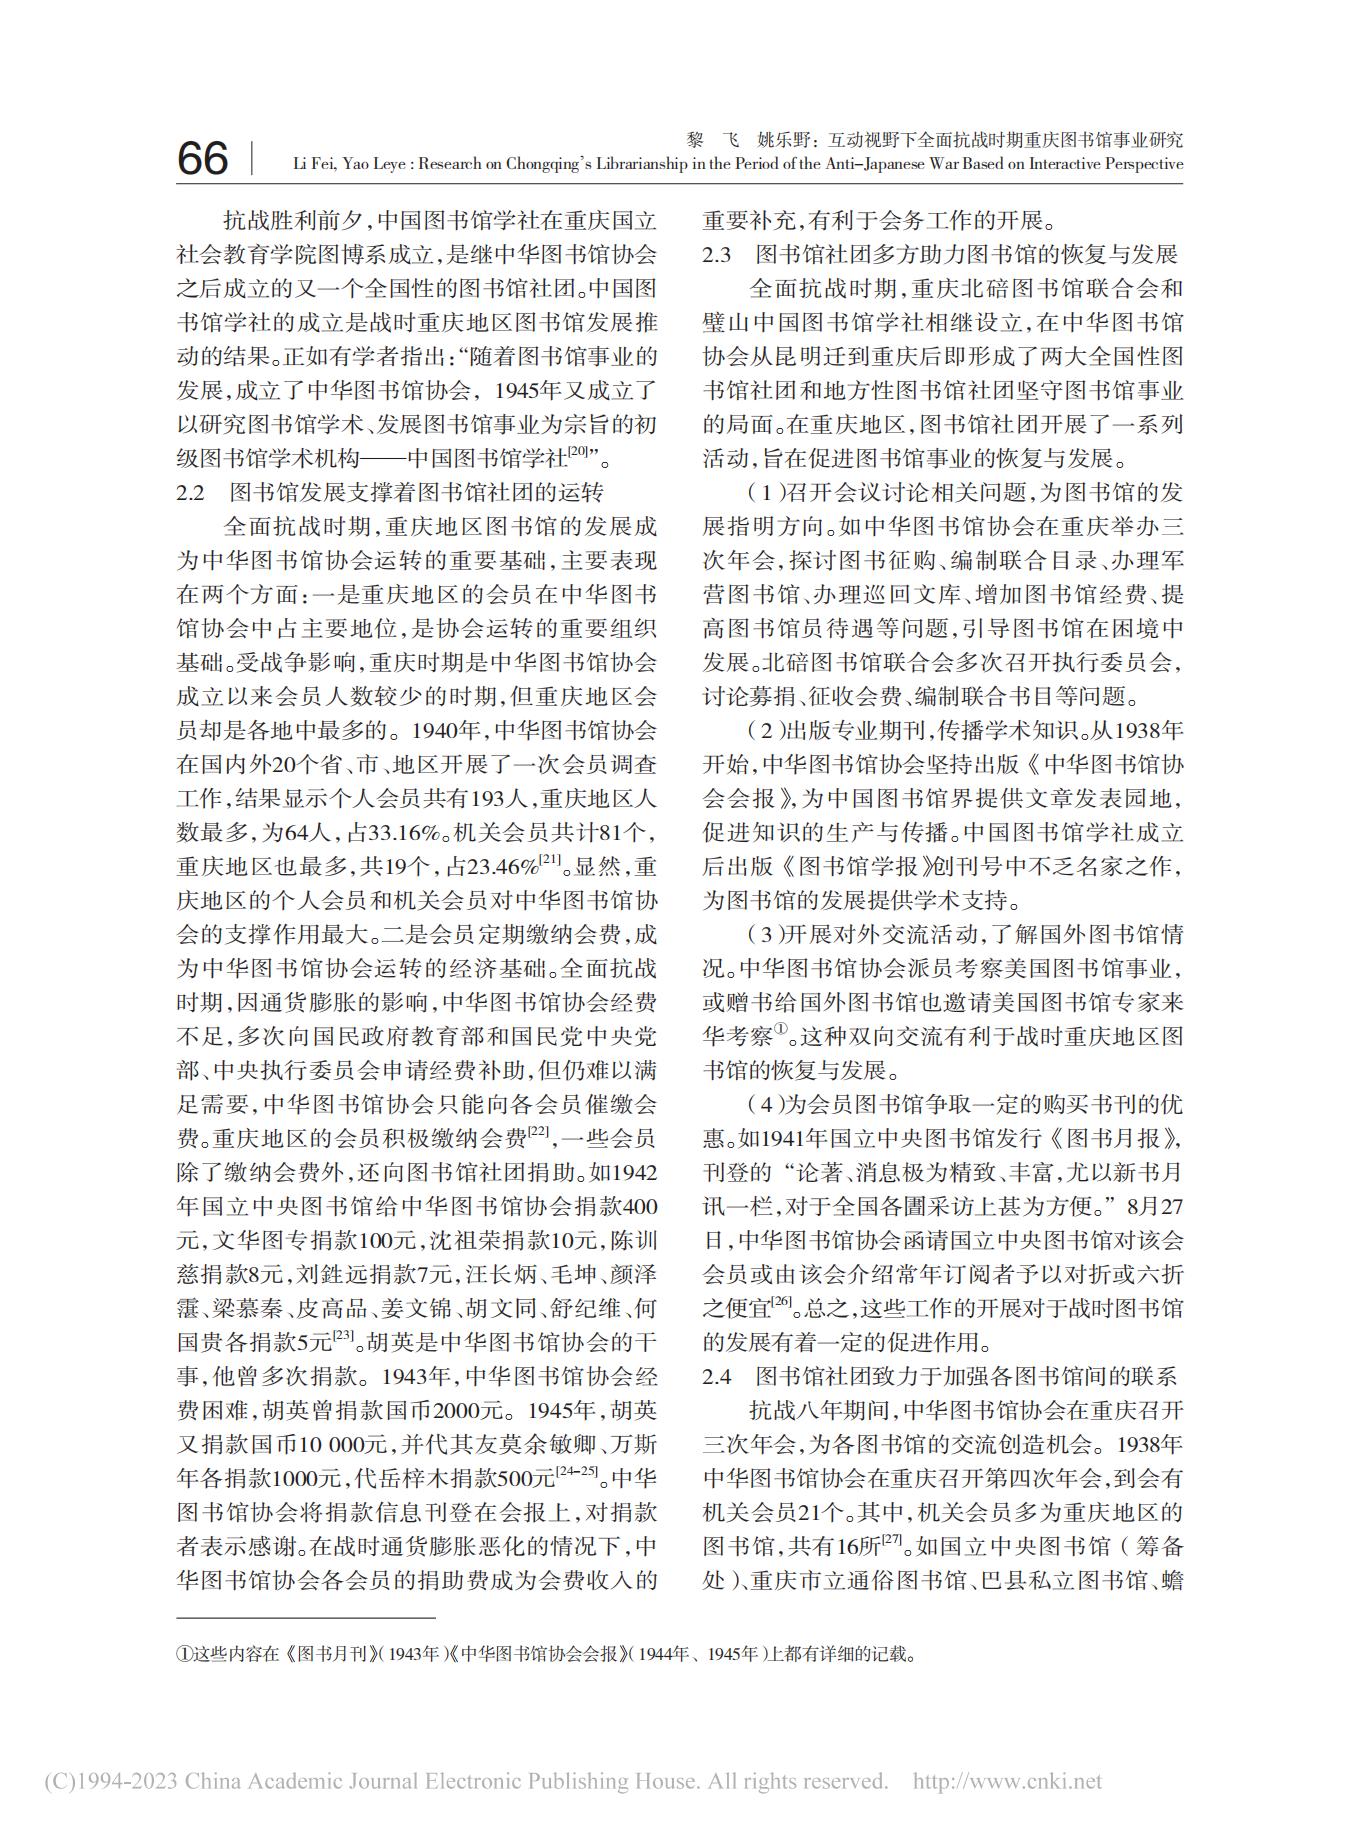 互动视野下全面抗战时期重庆图书馆事业研究_黎飞_03.jpg